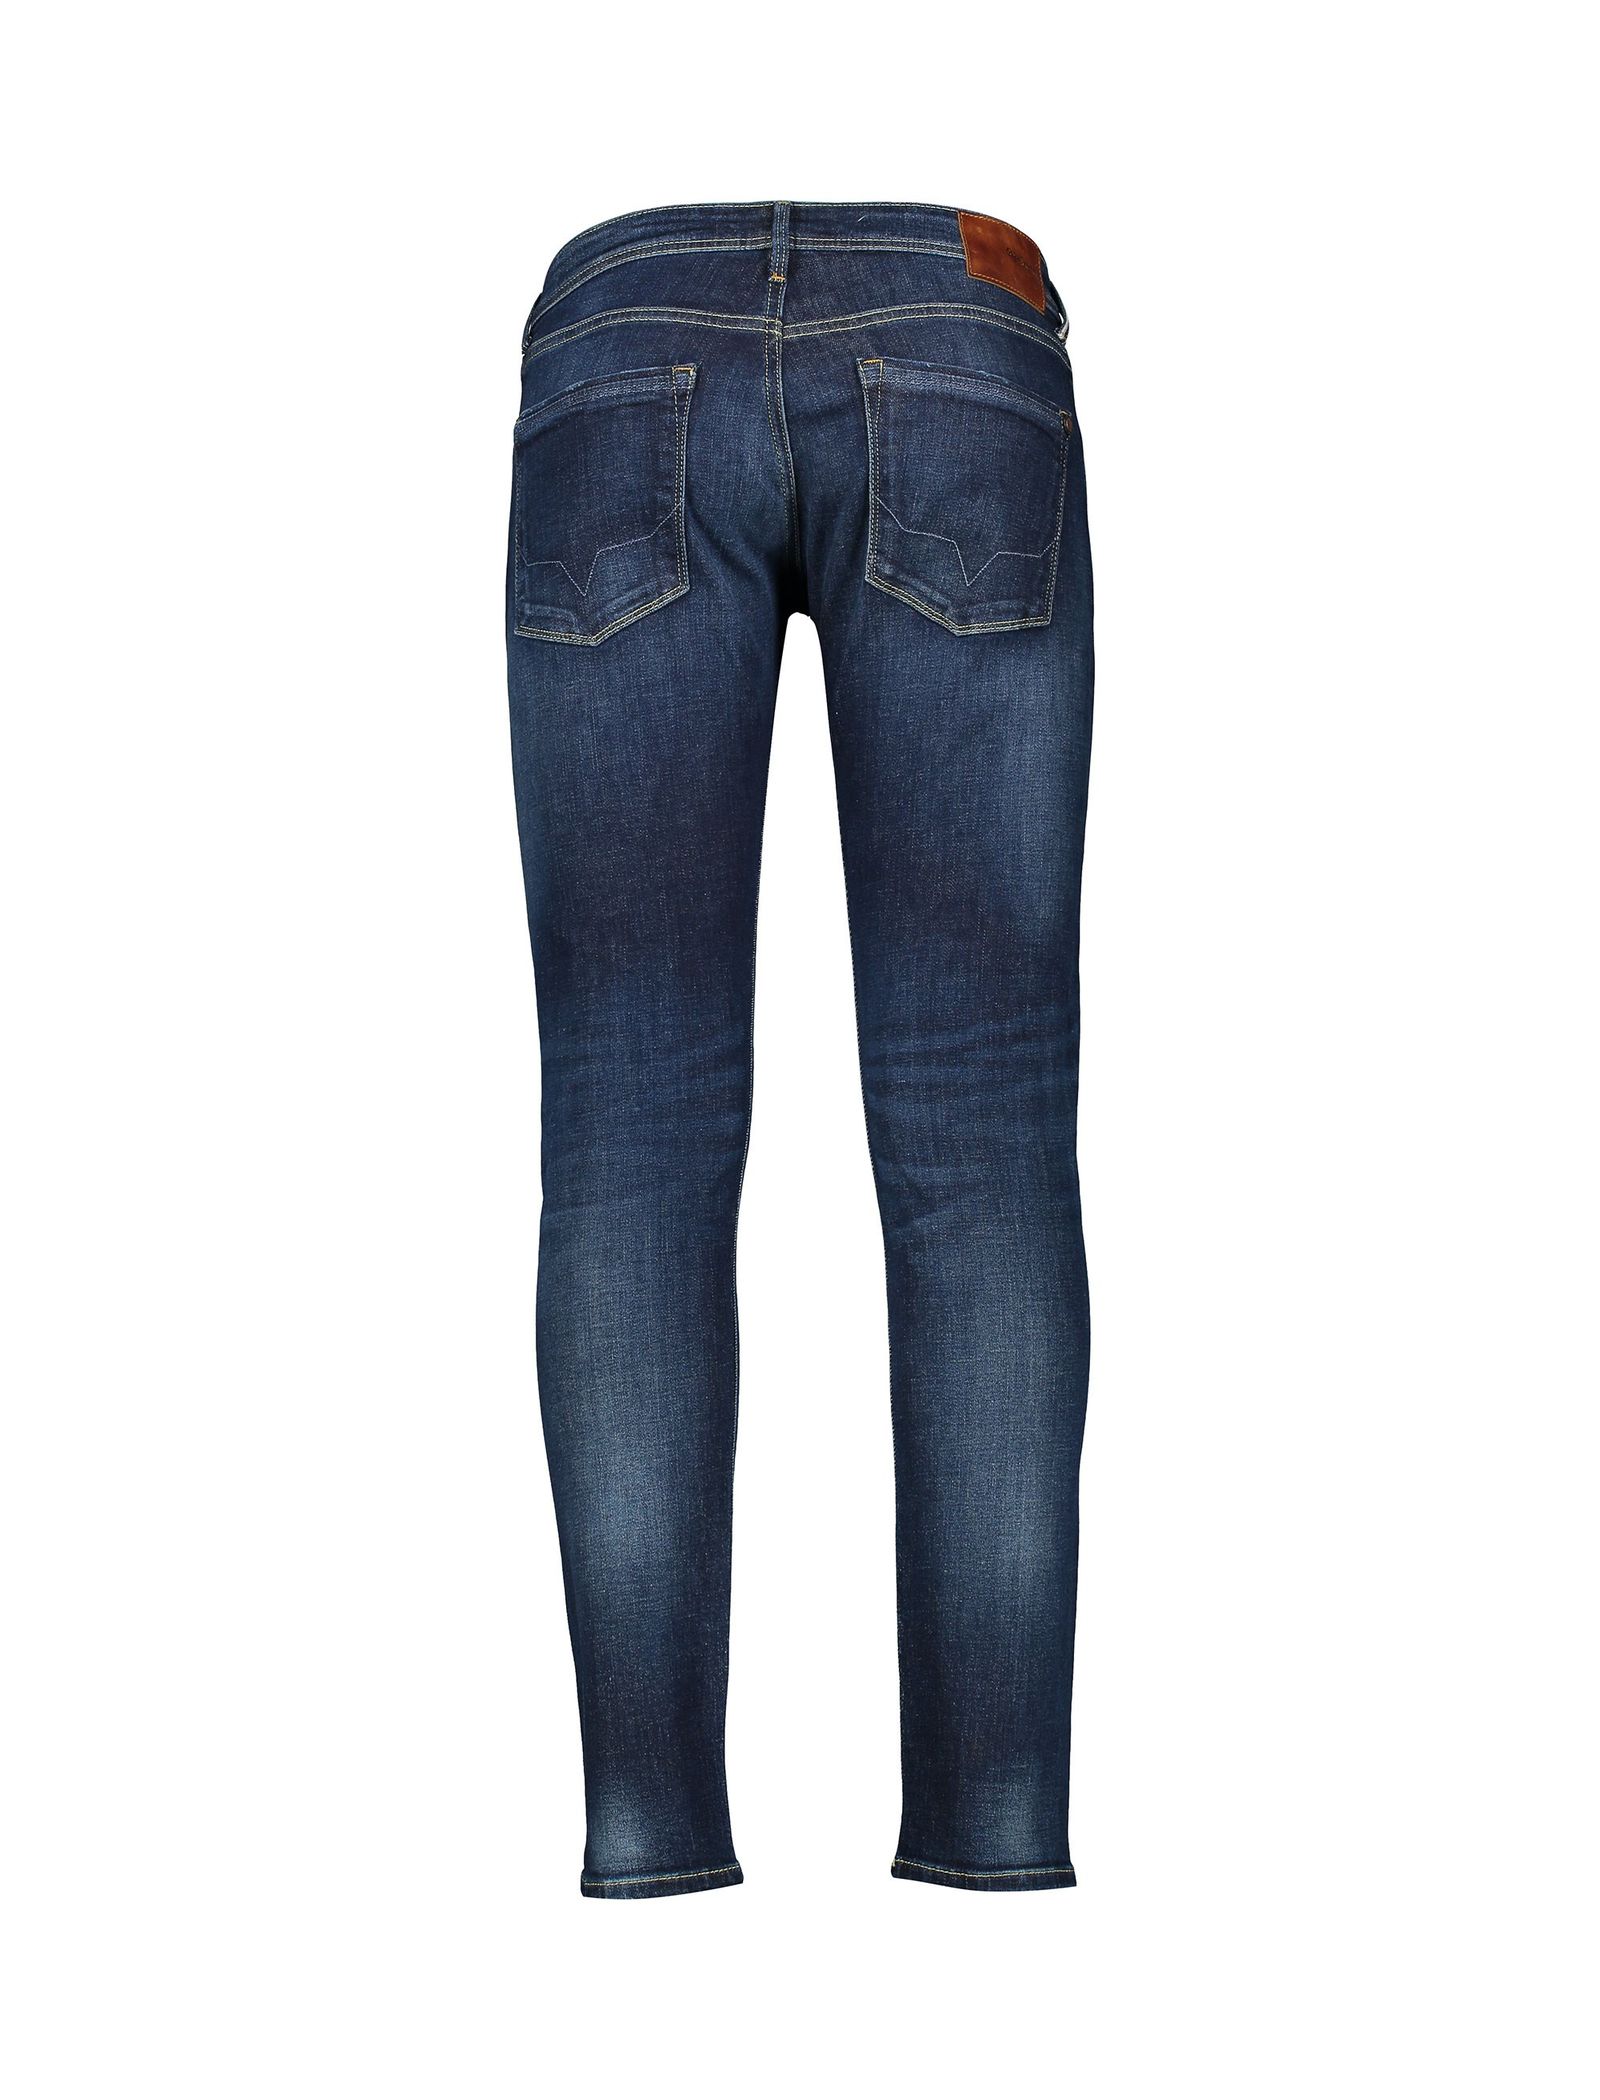 شلوار جین راسته مردانه - پپه جینز - سرمه اي - 3